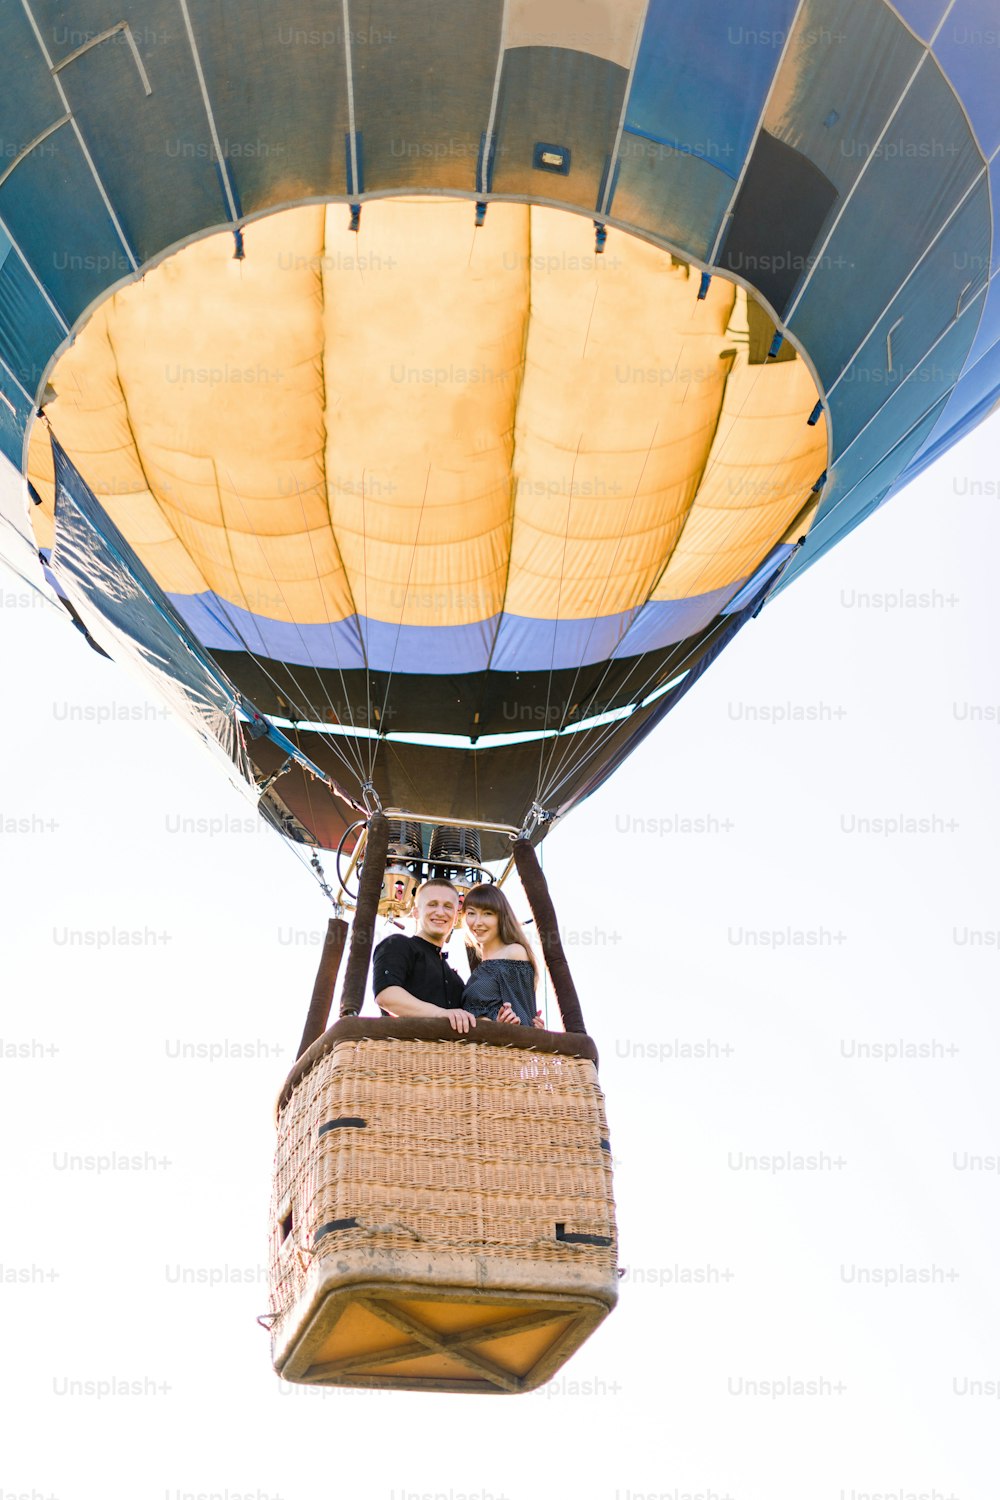 Beau couple romantique s’étreignant dans la nacelle de montgolfière, volant en été soir ensoleillé. Aventure romantique, concept d’amour en vol. Vue de la terre.